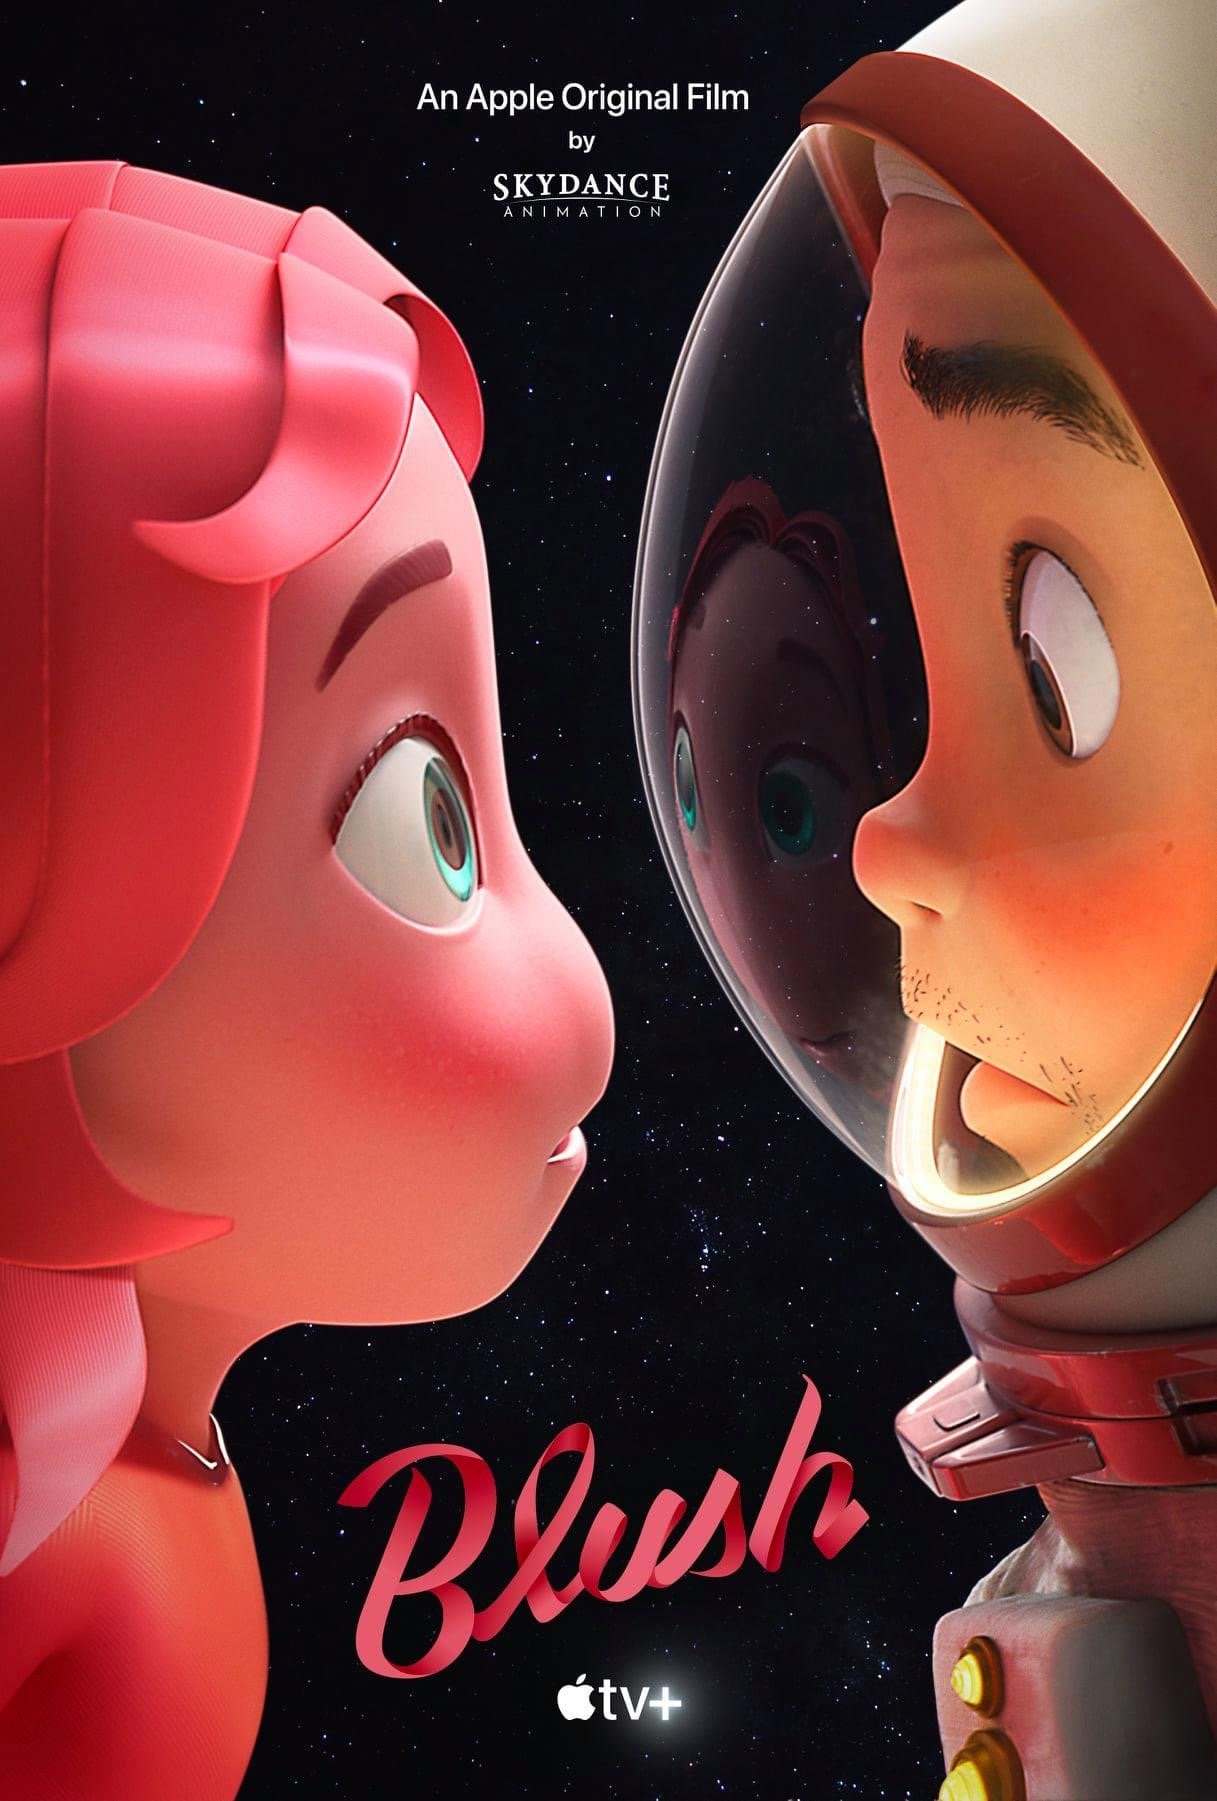 BLUSH Curta metragem animado Apple TV e Skydance Animation Poster - Blush | Animação de ficção científica, curta-metragem produzido pela Apple Original e Skydance Animation